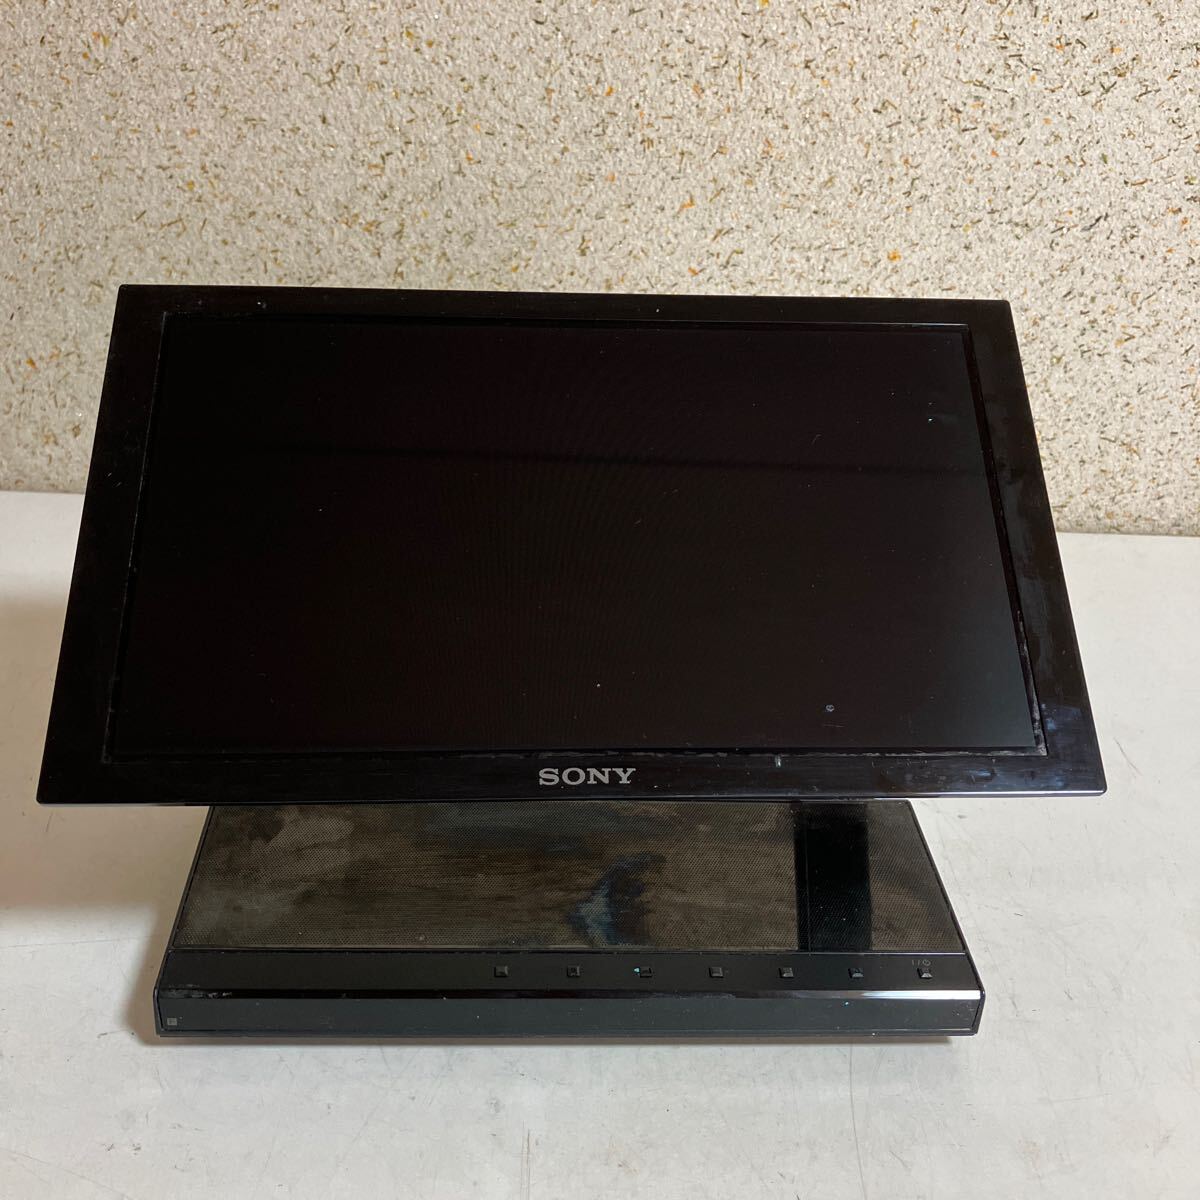 SONY Sony иметь машина EL телевизор XEL-1 08 год производства текущее состояние товар корпус только collector 